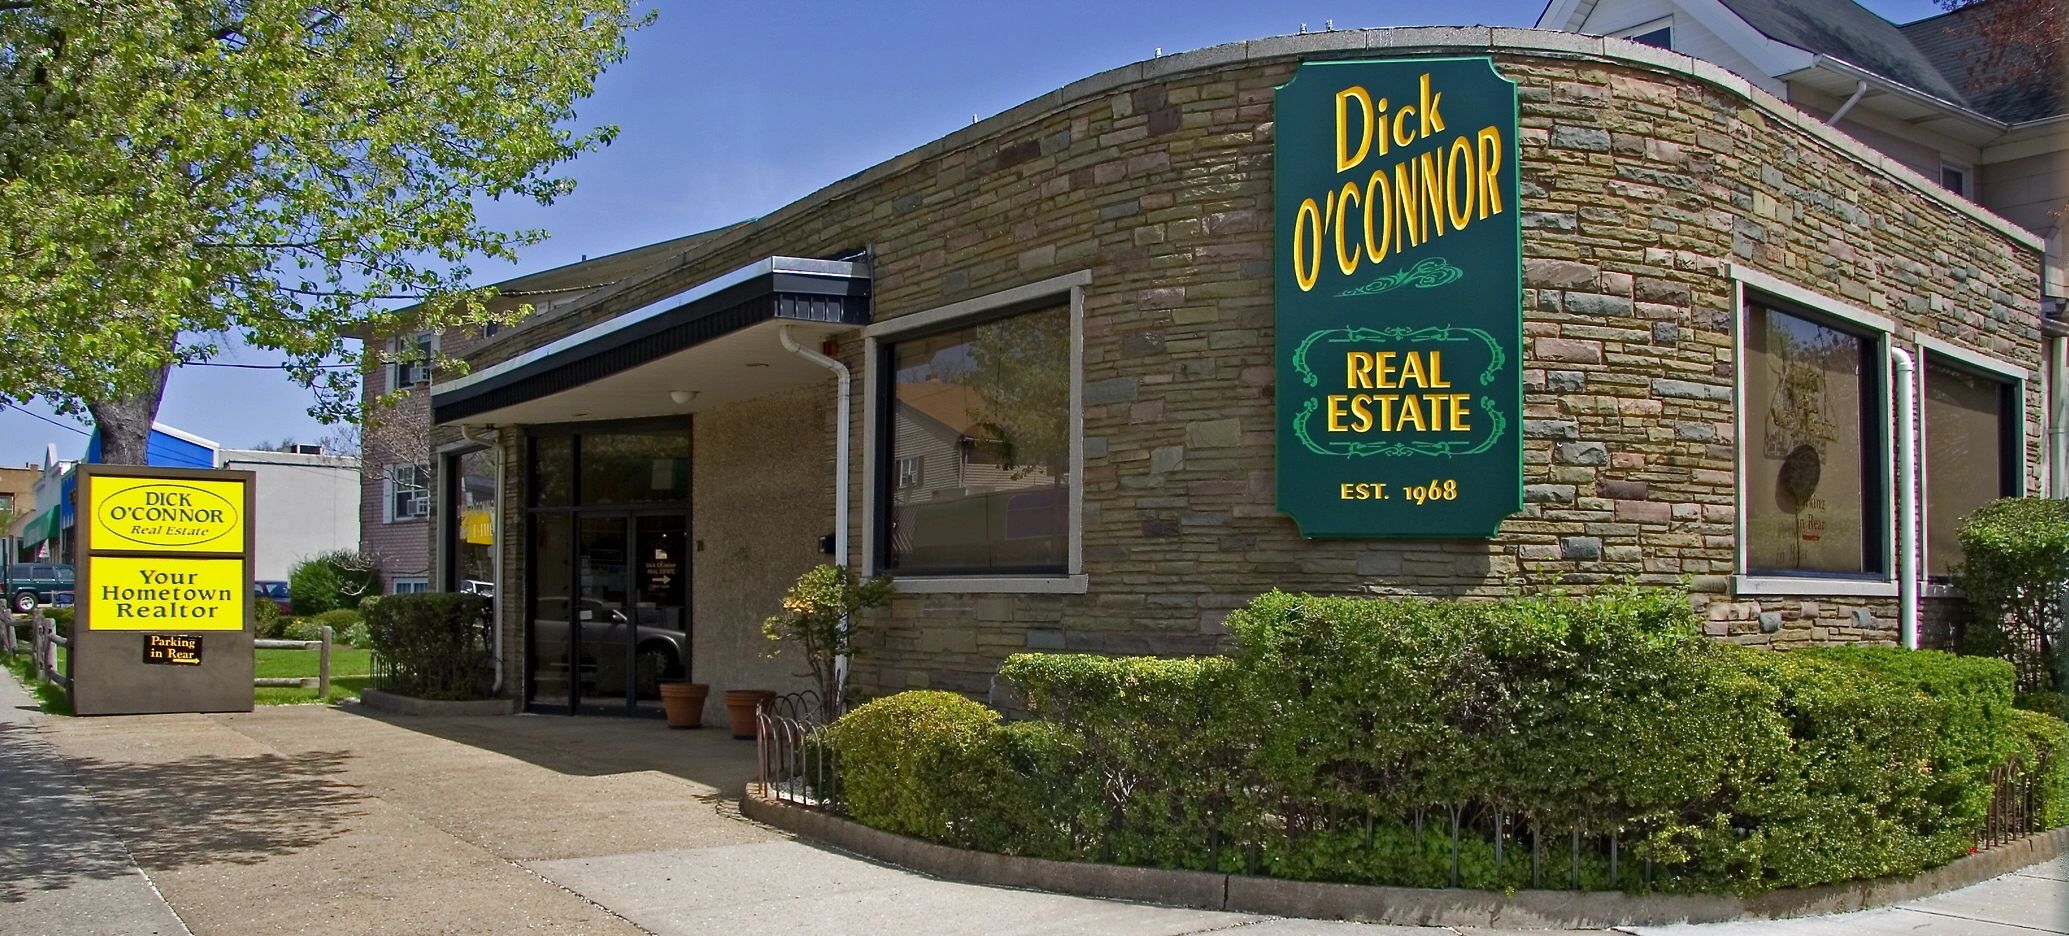 Dick O'connor Real Estate